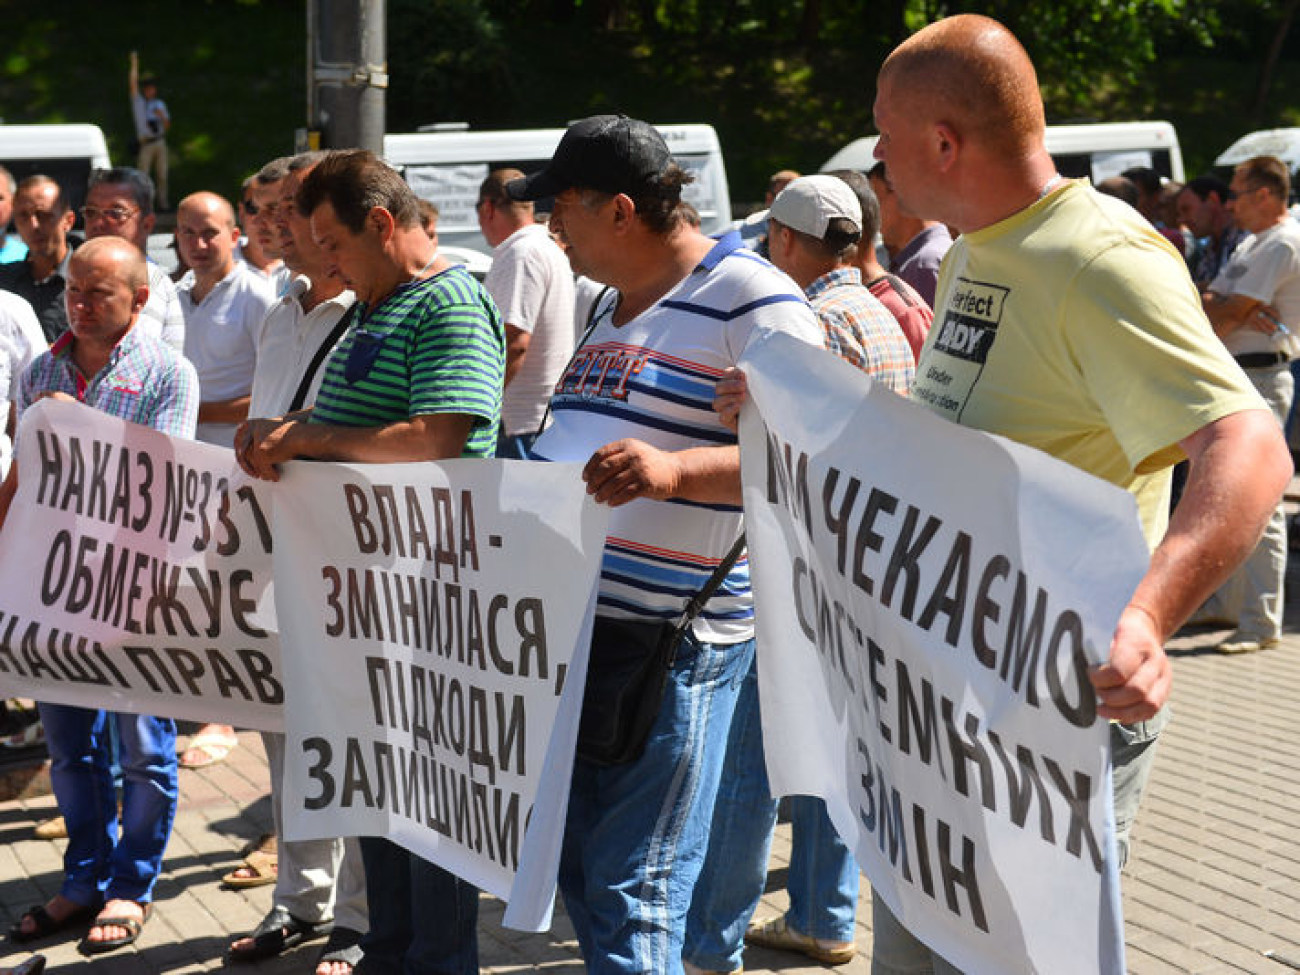 Перевозчики и активисты требуют у министров прекратить коррупцию и бесчинства, 10 июня 2014г.